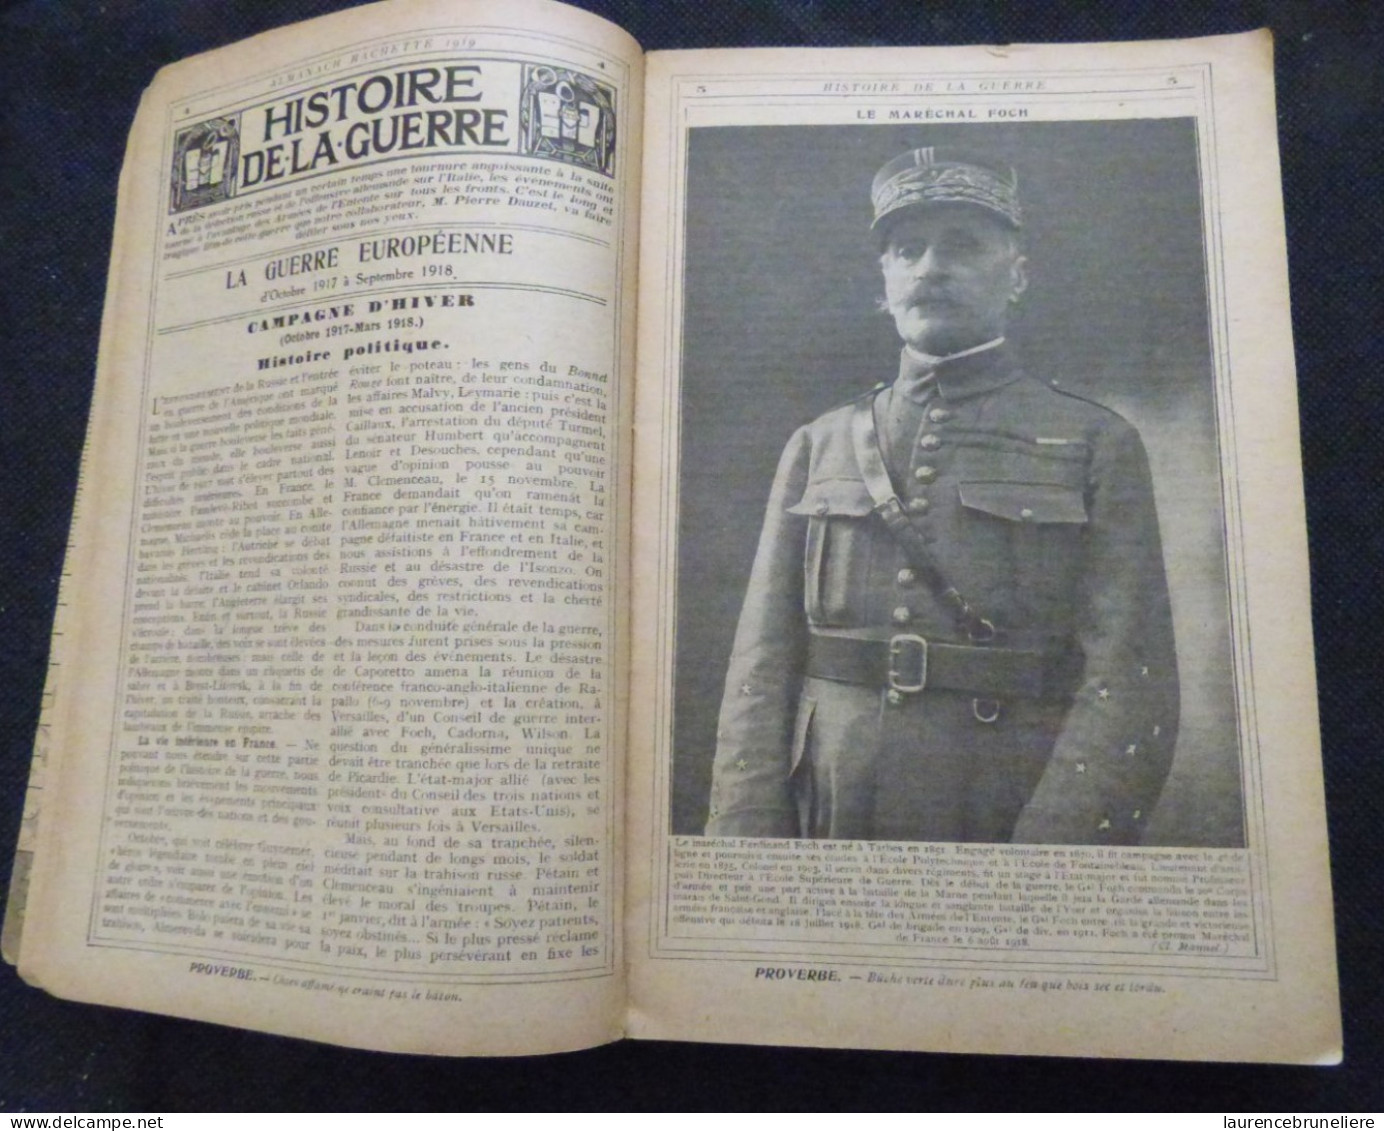 ALMANACH HACHETTE DE LA VIE PRATIQUE  1919 - Enciclopedias